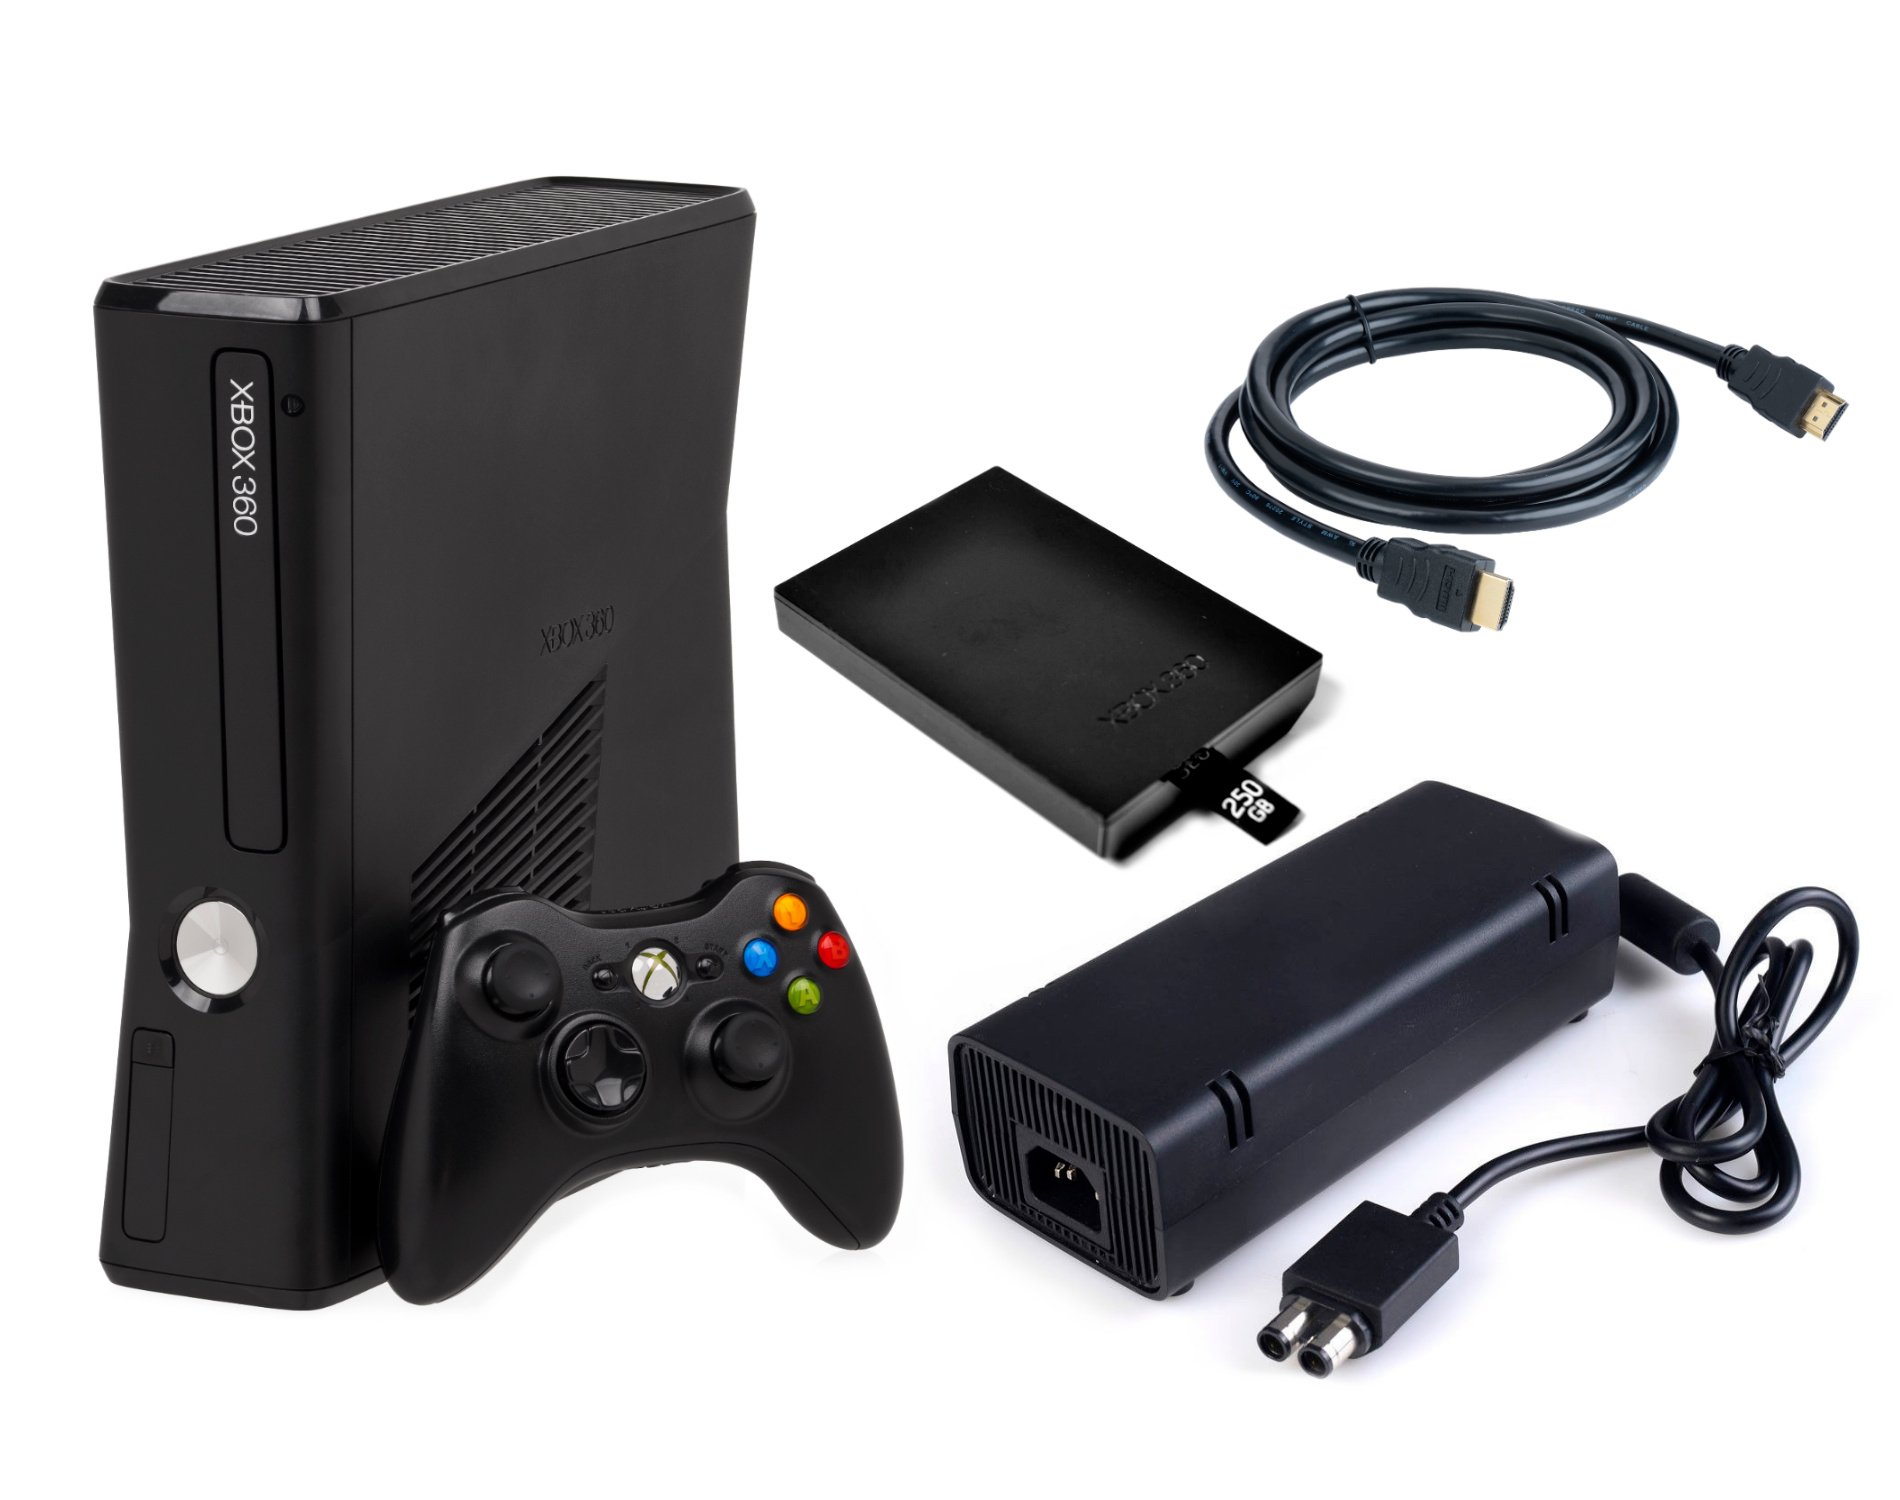 Купить приставку xbox 360. Xbox 360 Slim. Хбокс 360 слим. Игровая приставка Xbox 360 250 GB. Xbox 360 s 250гб.